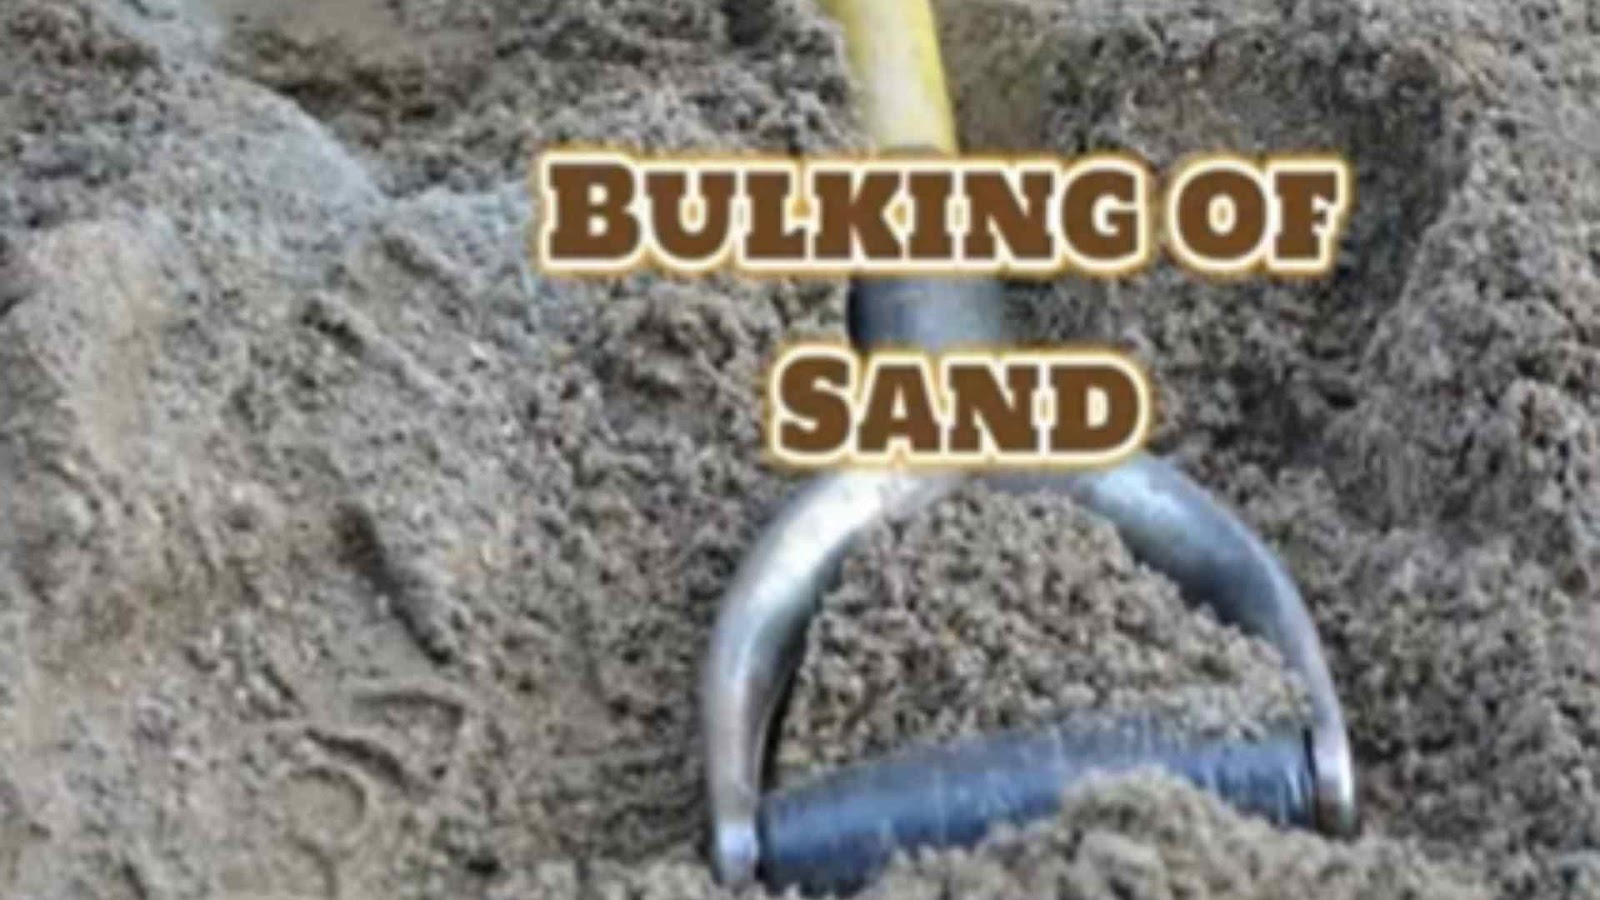 Bulking of sand: